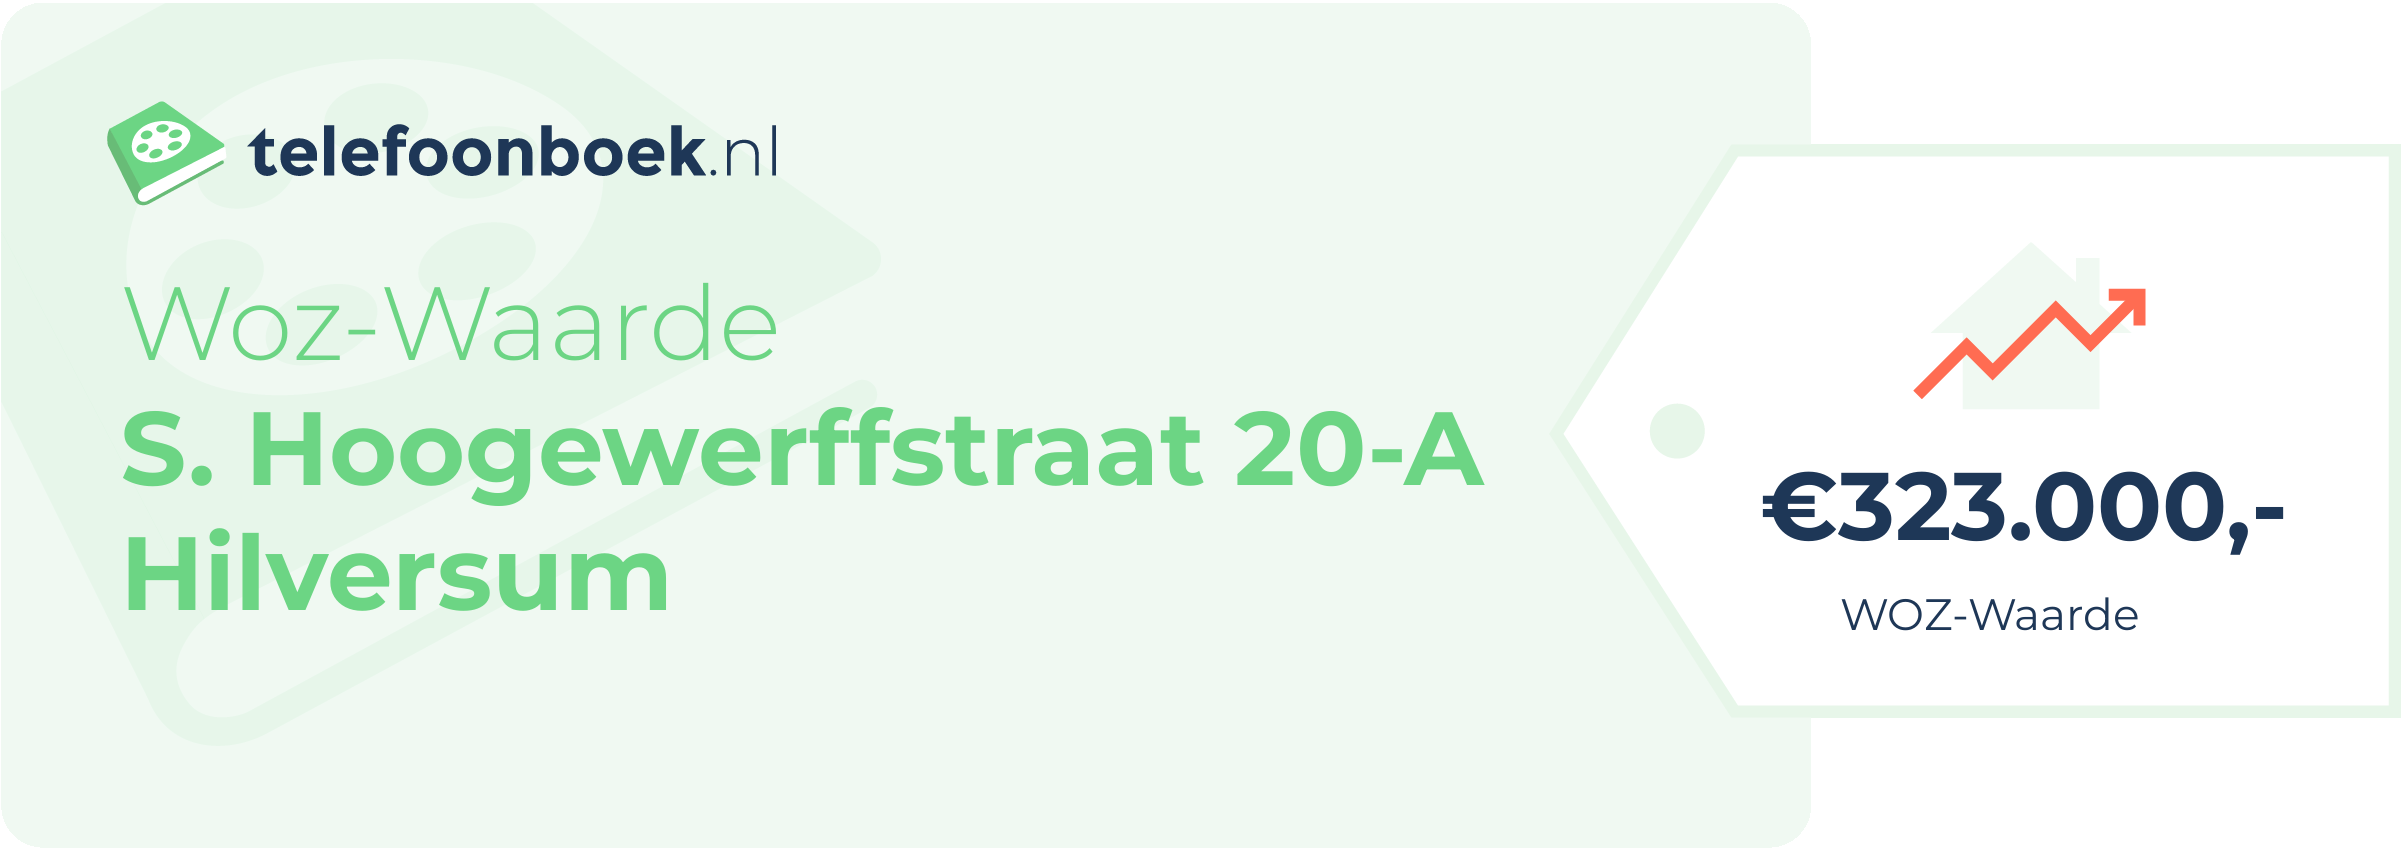 WOZ-waarde S. Hoogewerffstraat 20-A Hilversum